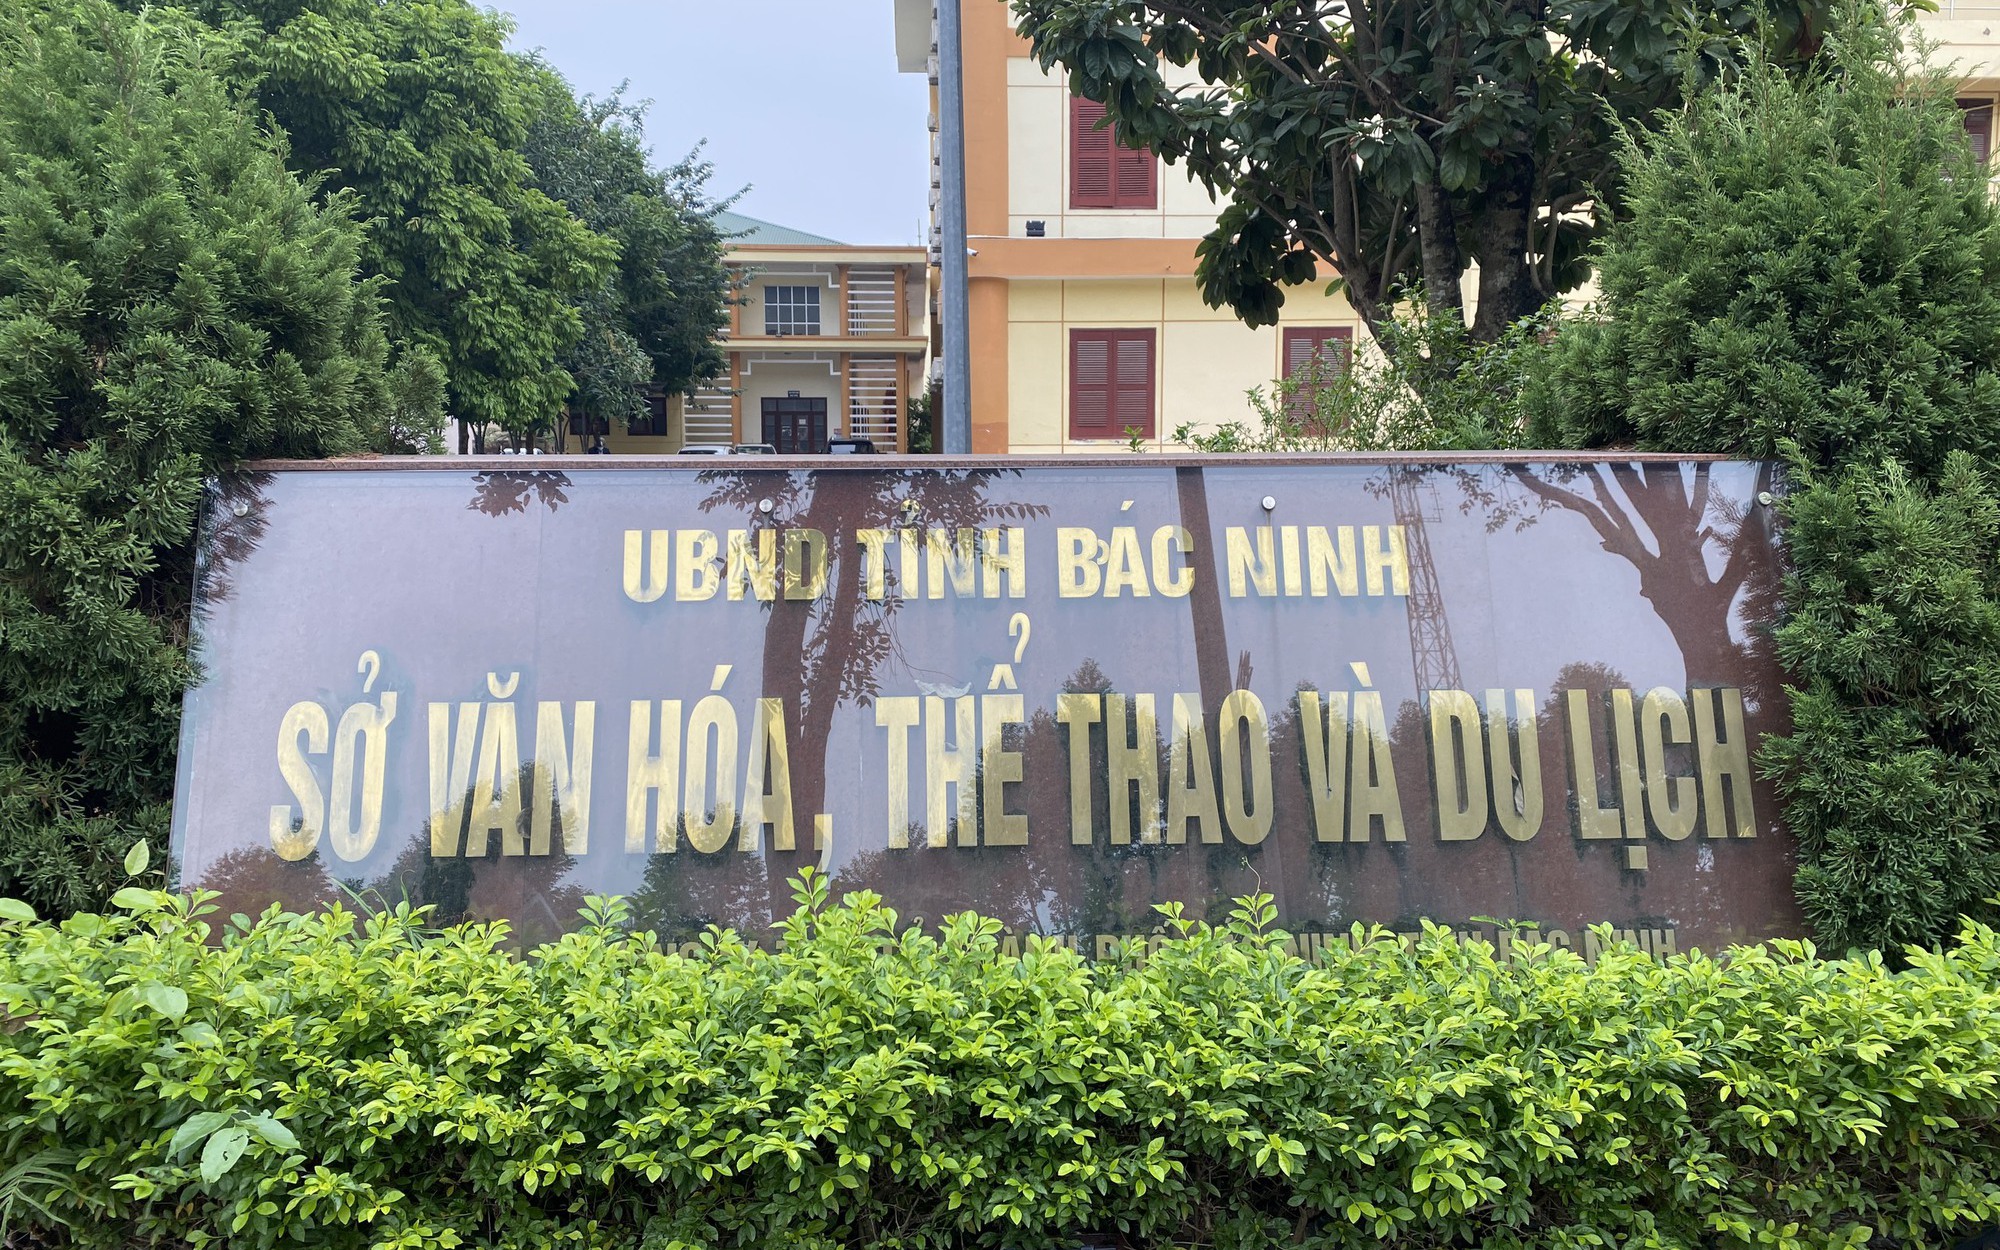 Bắc Ninh: Giáo viên “tố” bị “ăn chặn” tiền phụ cấp suốt 7 năm - Sở Văn hóa Thể thao và Du lịch ở đâu?